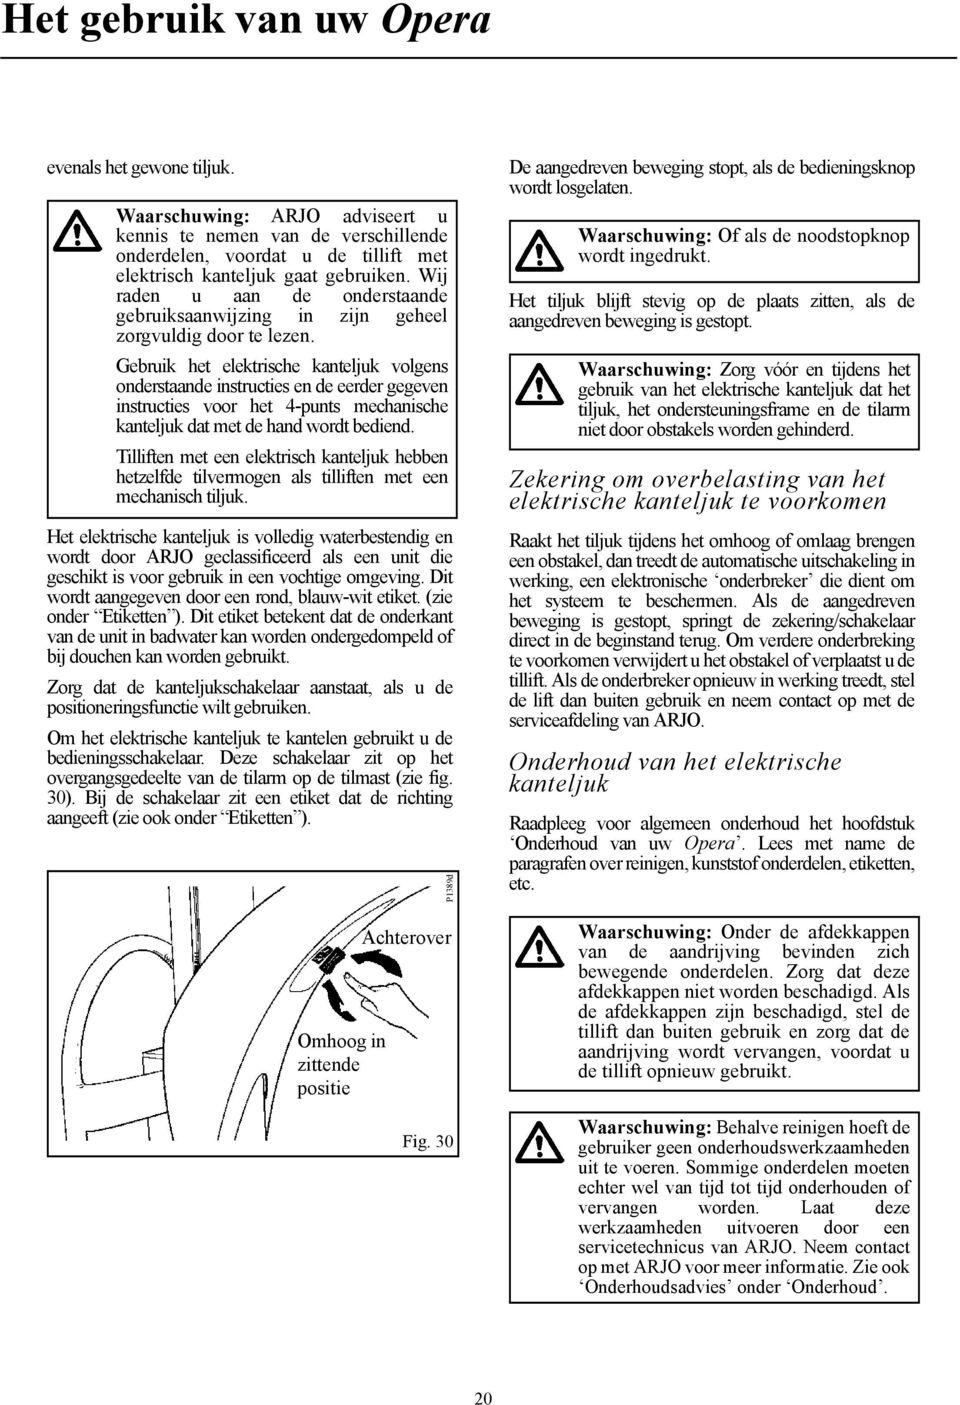 Gebruik het elektrische kanteljuk volgens onderstaande instructies en de eerder gegeven instructies voor het 4-punts mechanische kanteljuk dat met de hand wordt bediend.